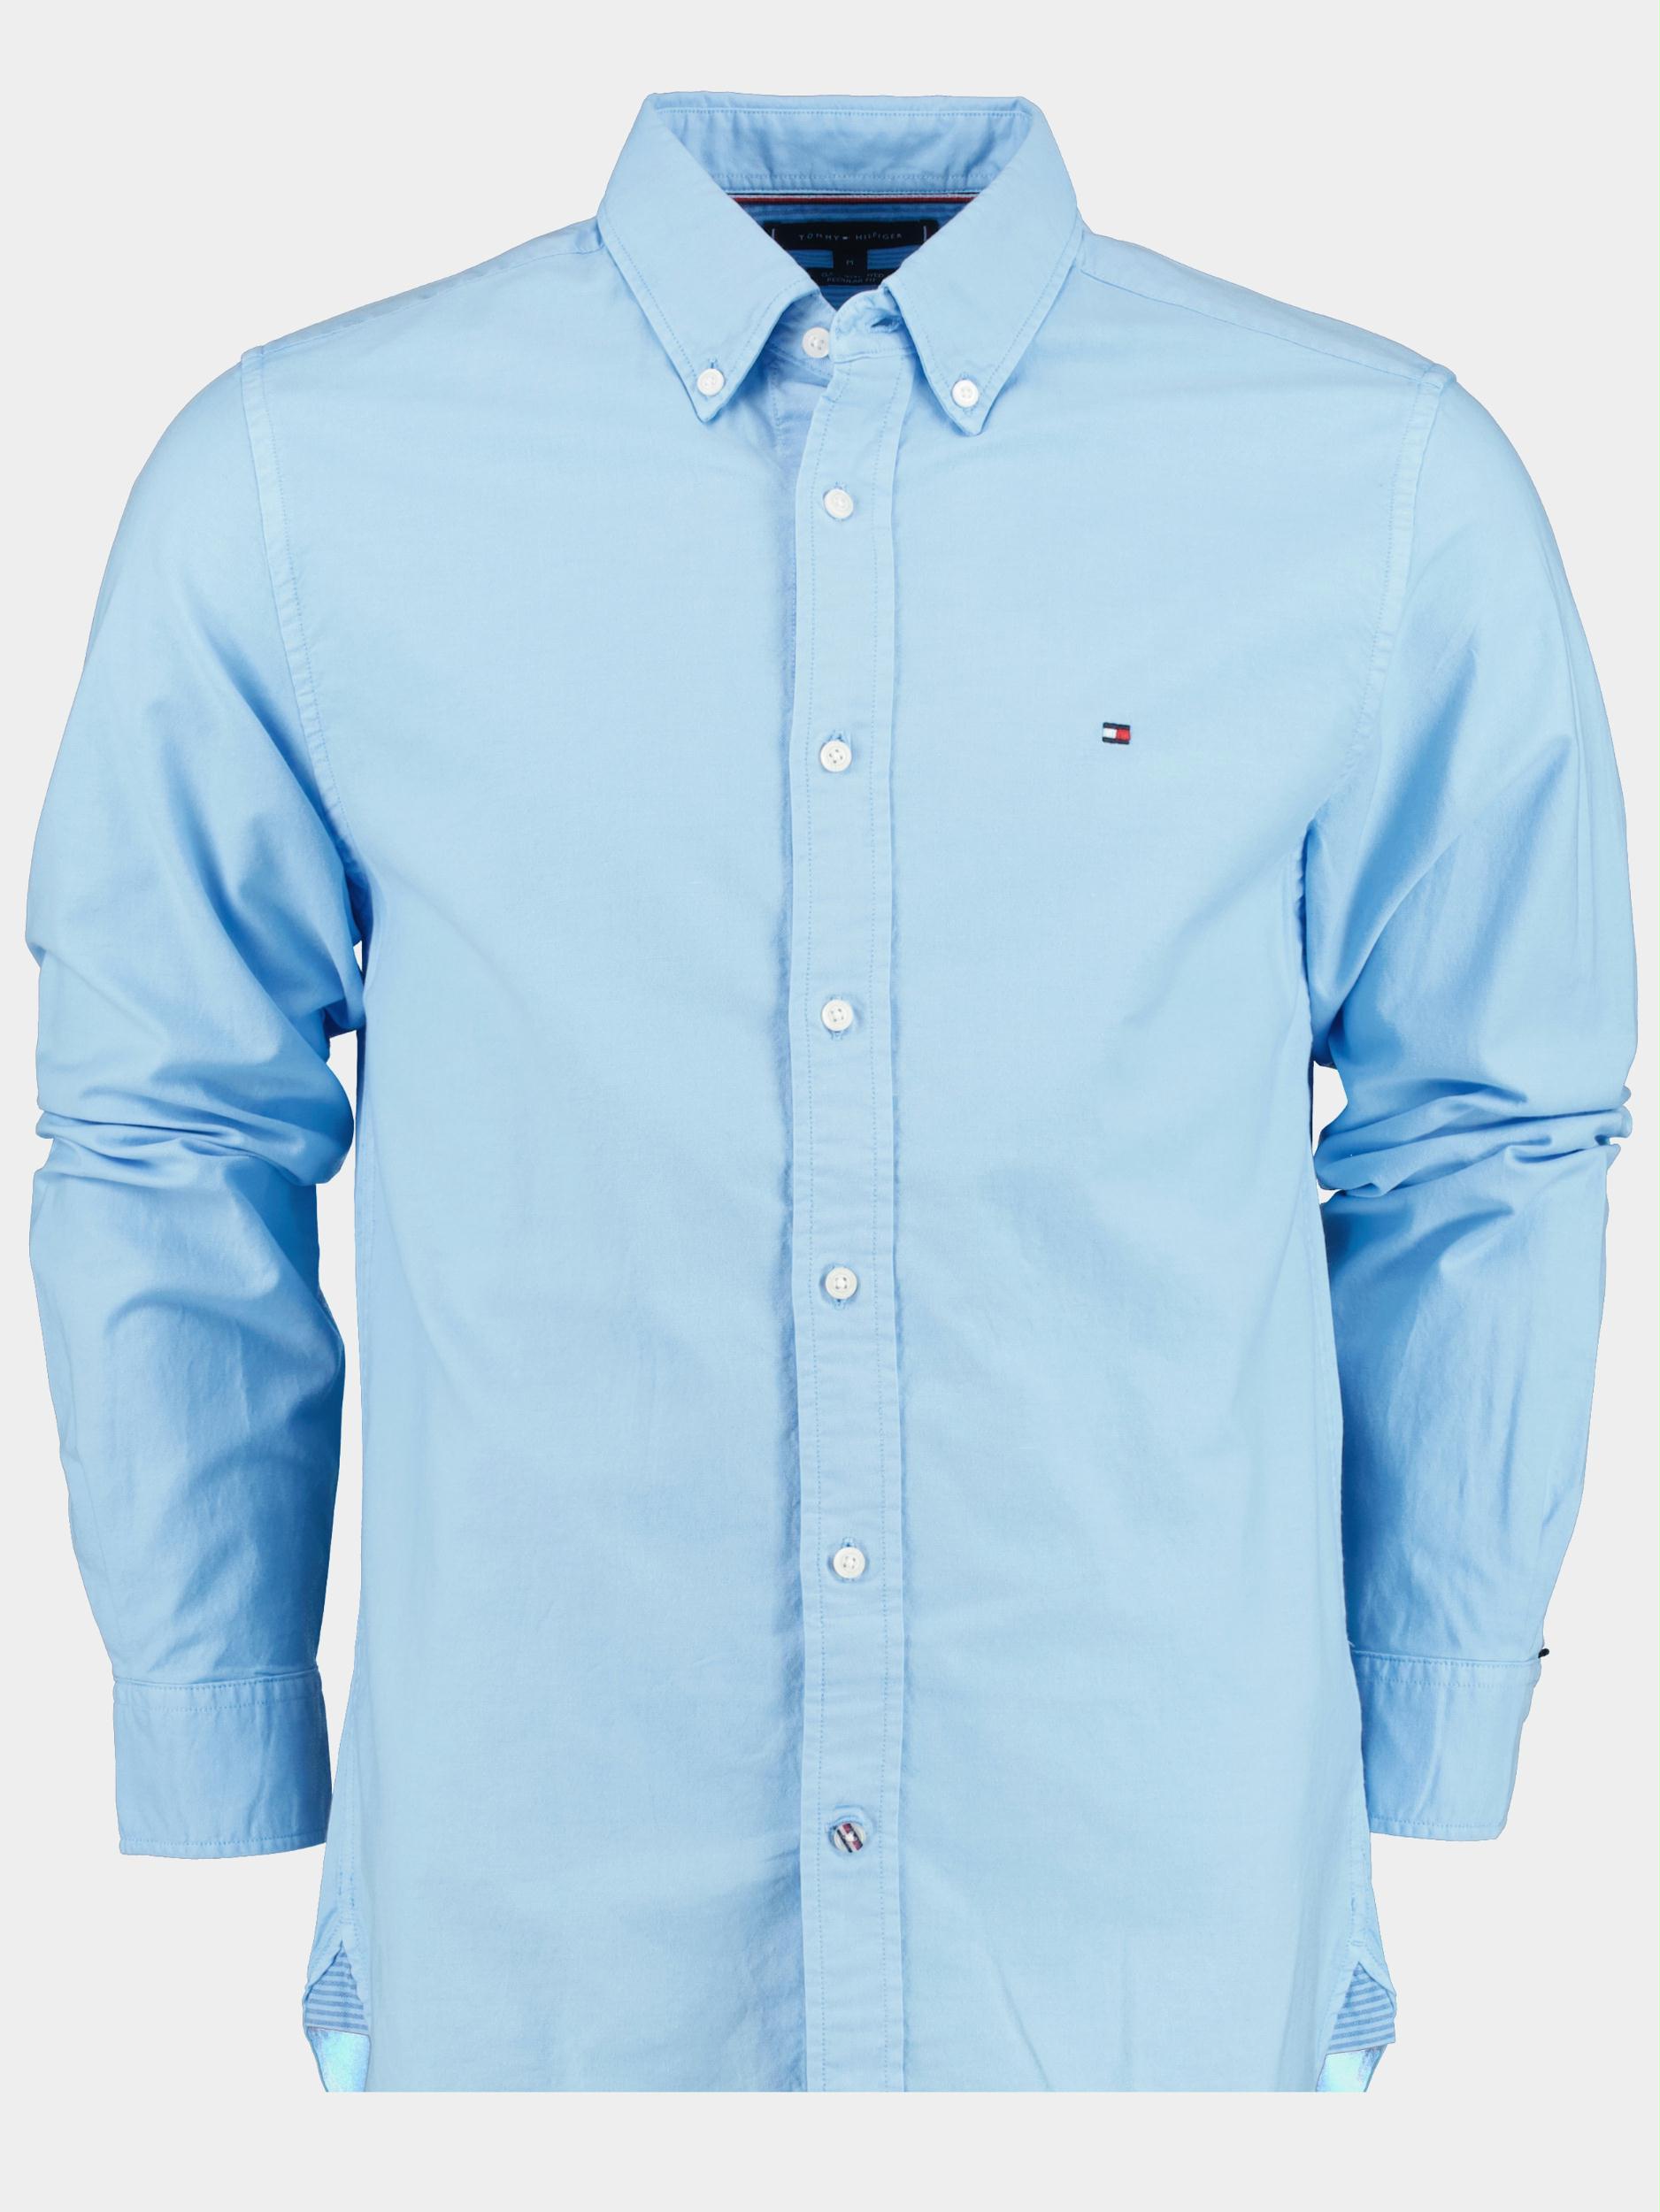 Tommy Hilfiger Casual hemd lange mouw Blauw Pigment garment dye MW0MW30677/C1Z